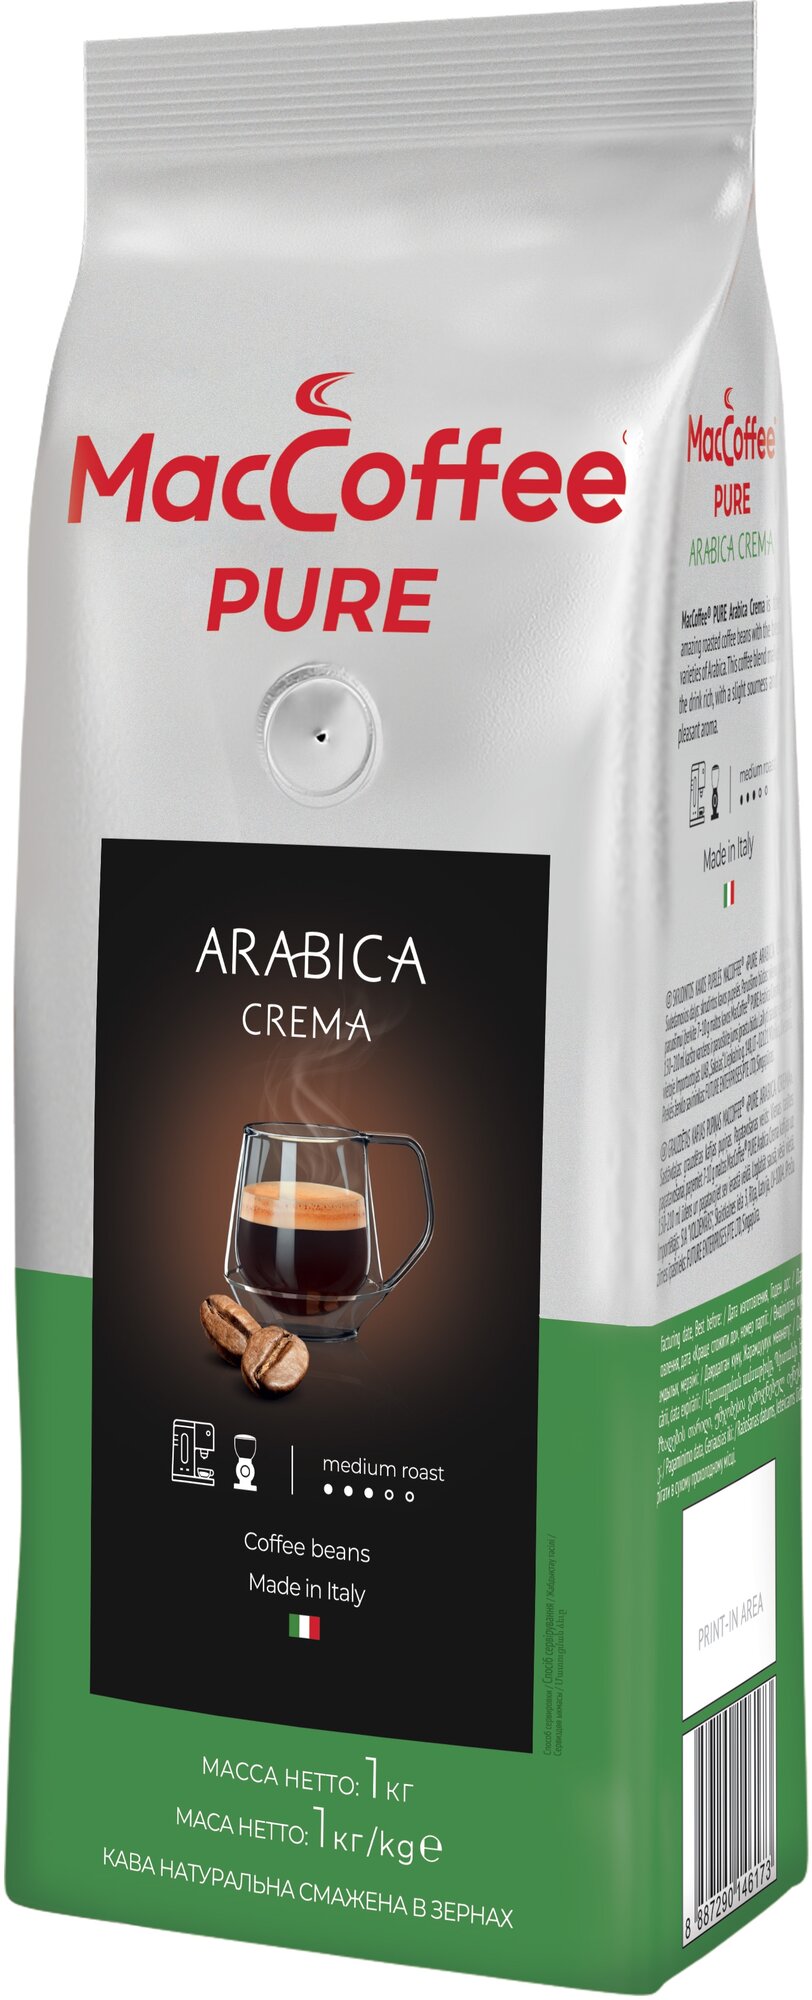 Кофе в зернах MacCoffee Pure Arabica Crema, 1 кг